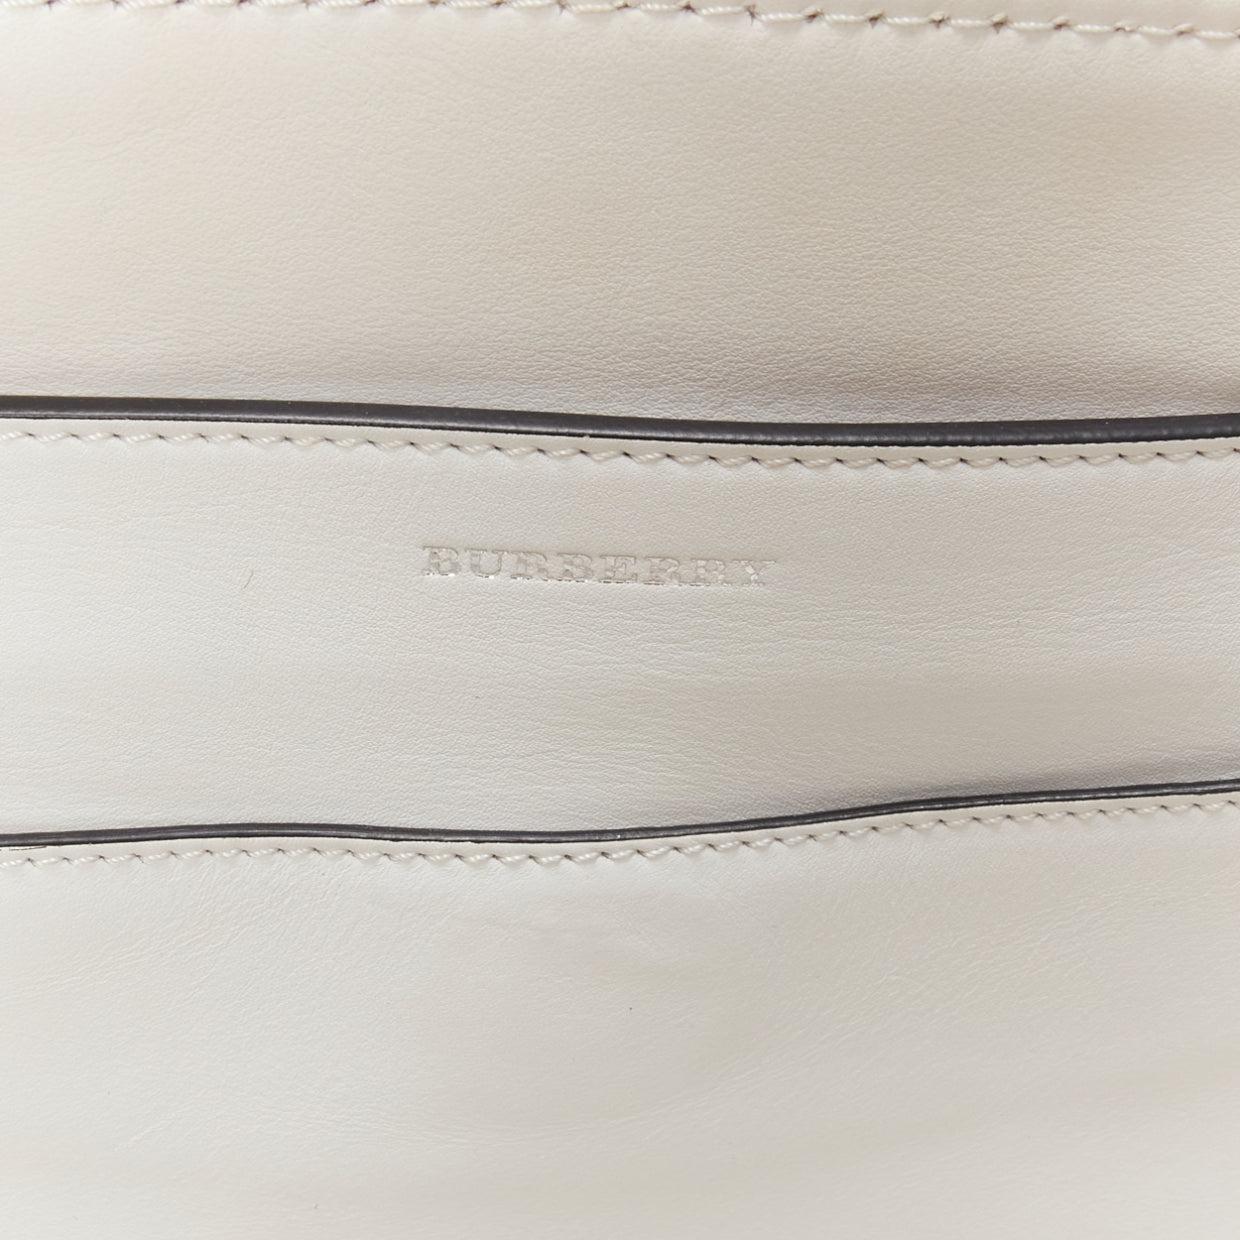 BURBERRY white leather beige canvas studded belt shoulder travel satchel bag 6